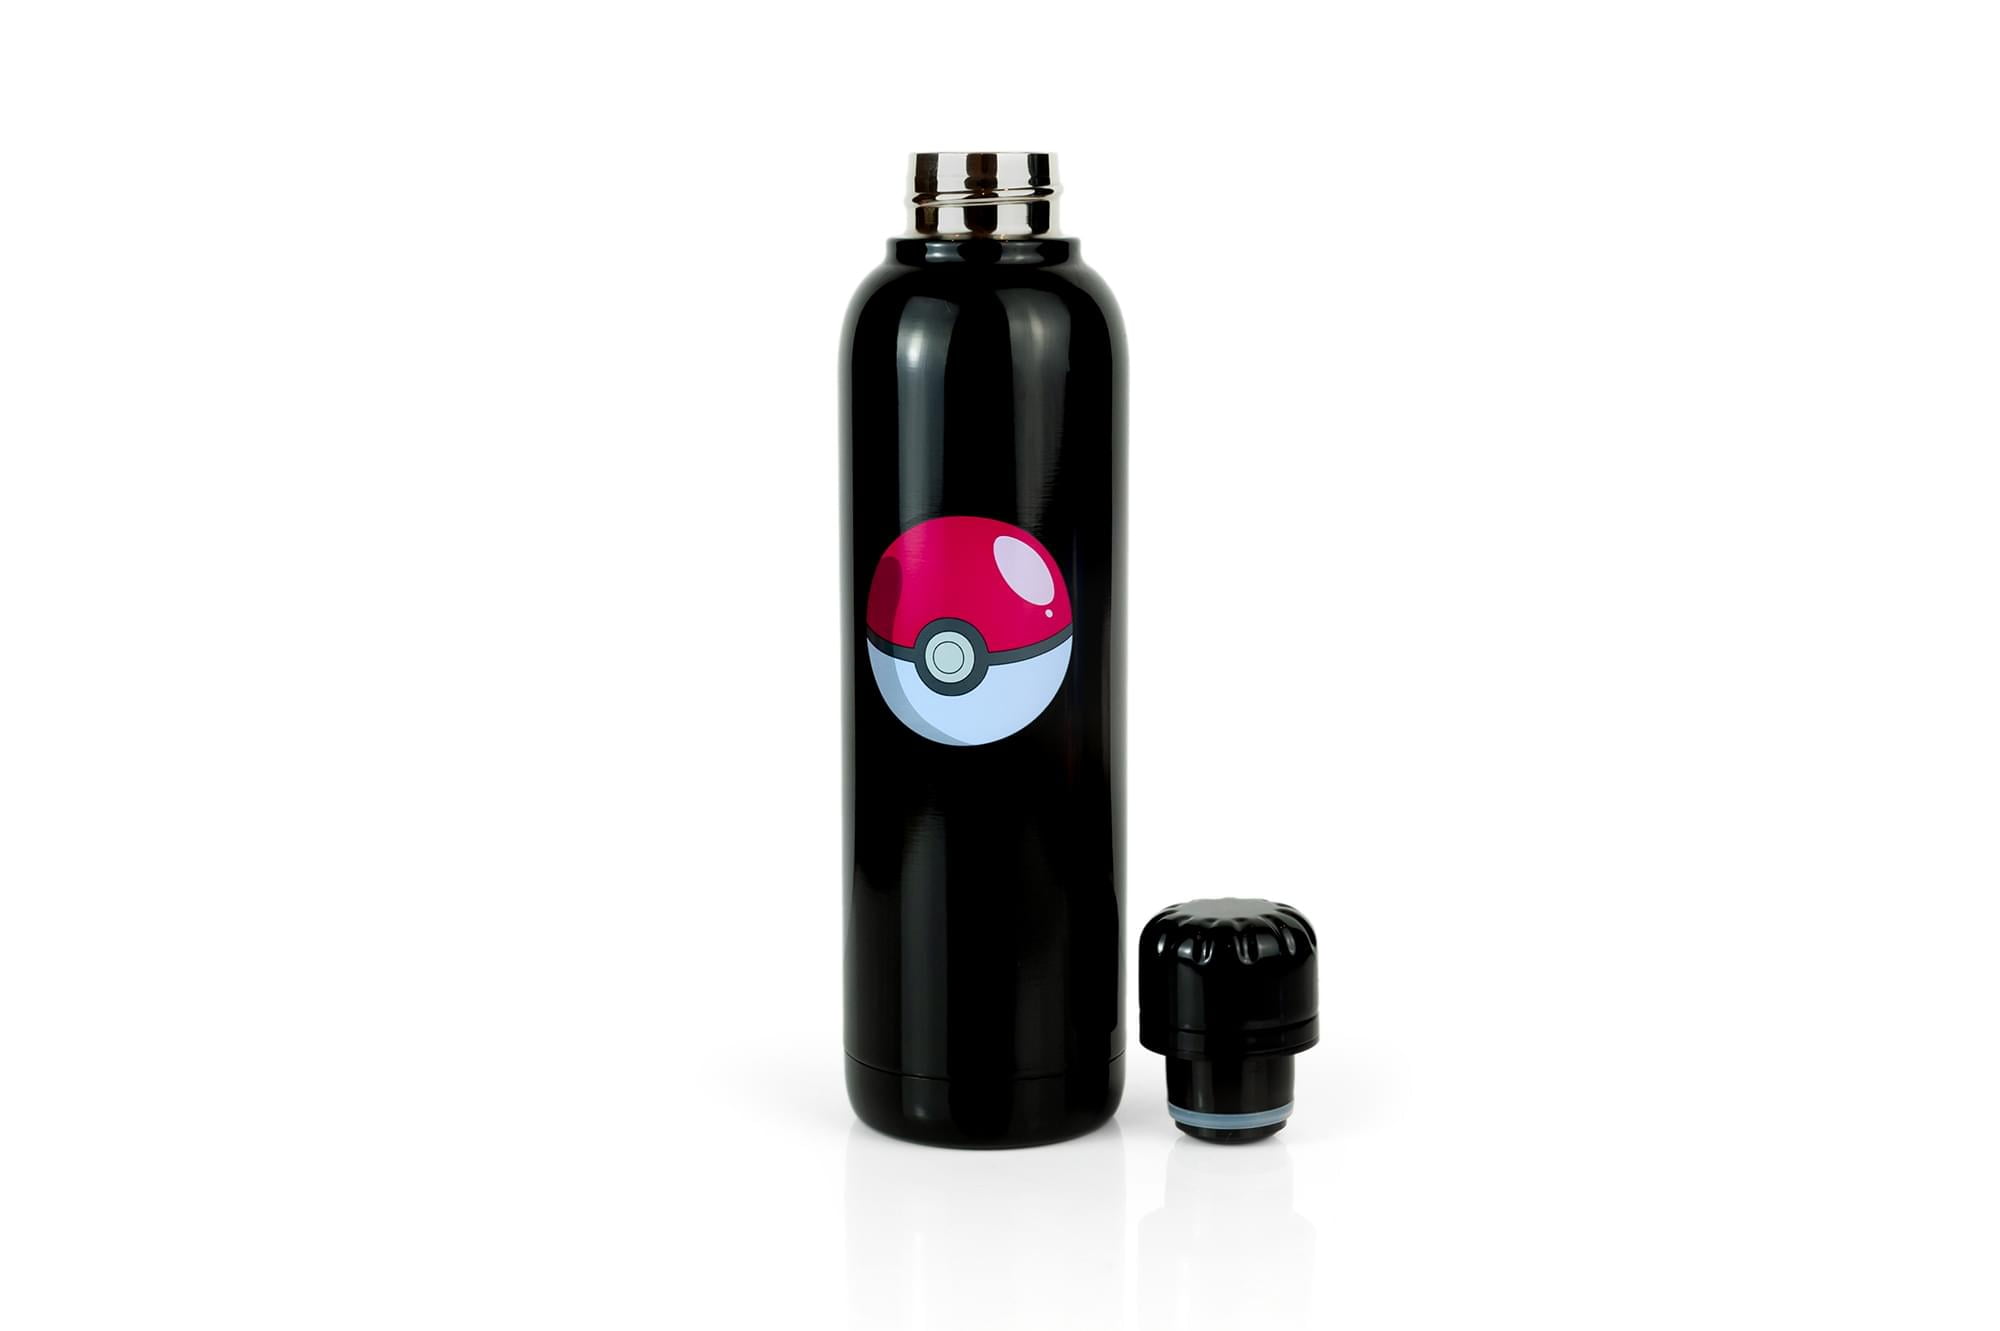 Personalized Pokemon Stainless Steel Water Bottle water Bottle